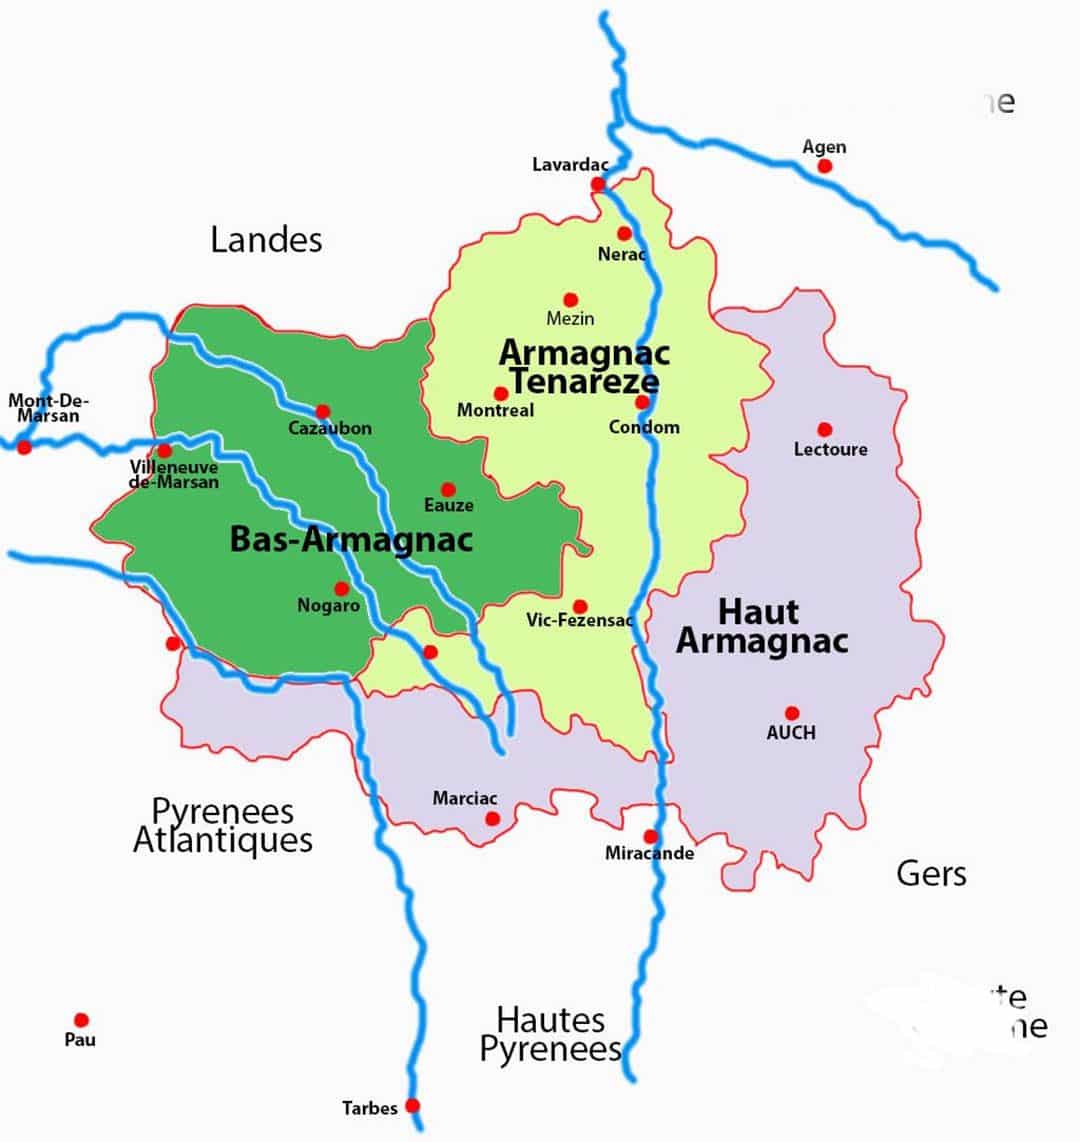 Armagnac zones